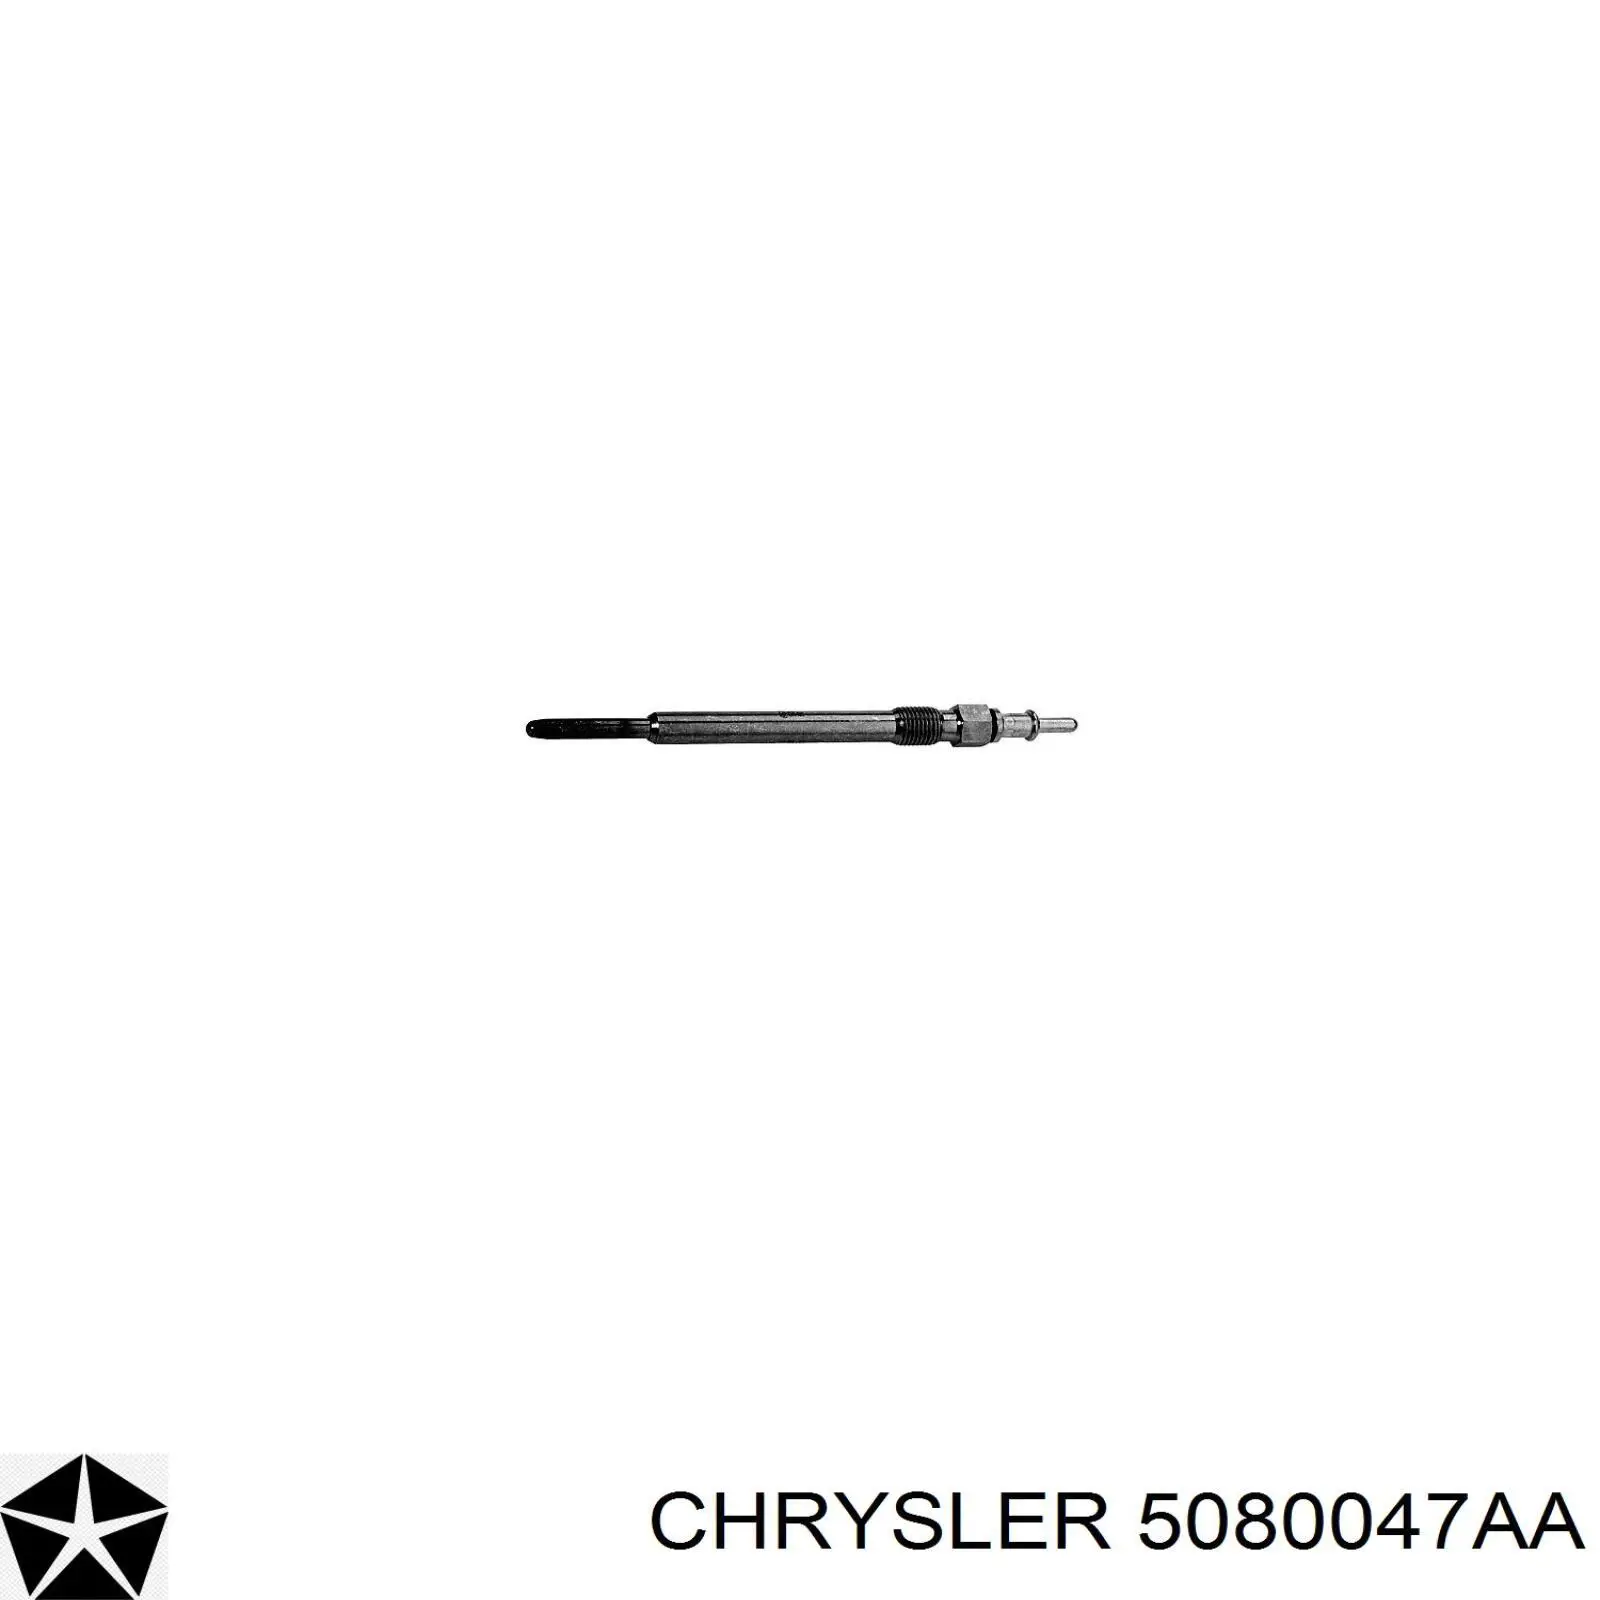 5080047AA Chrysler bujía de precalentamiento